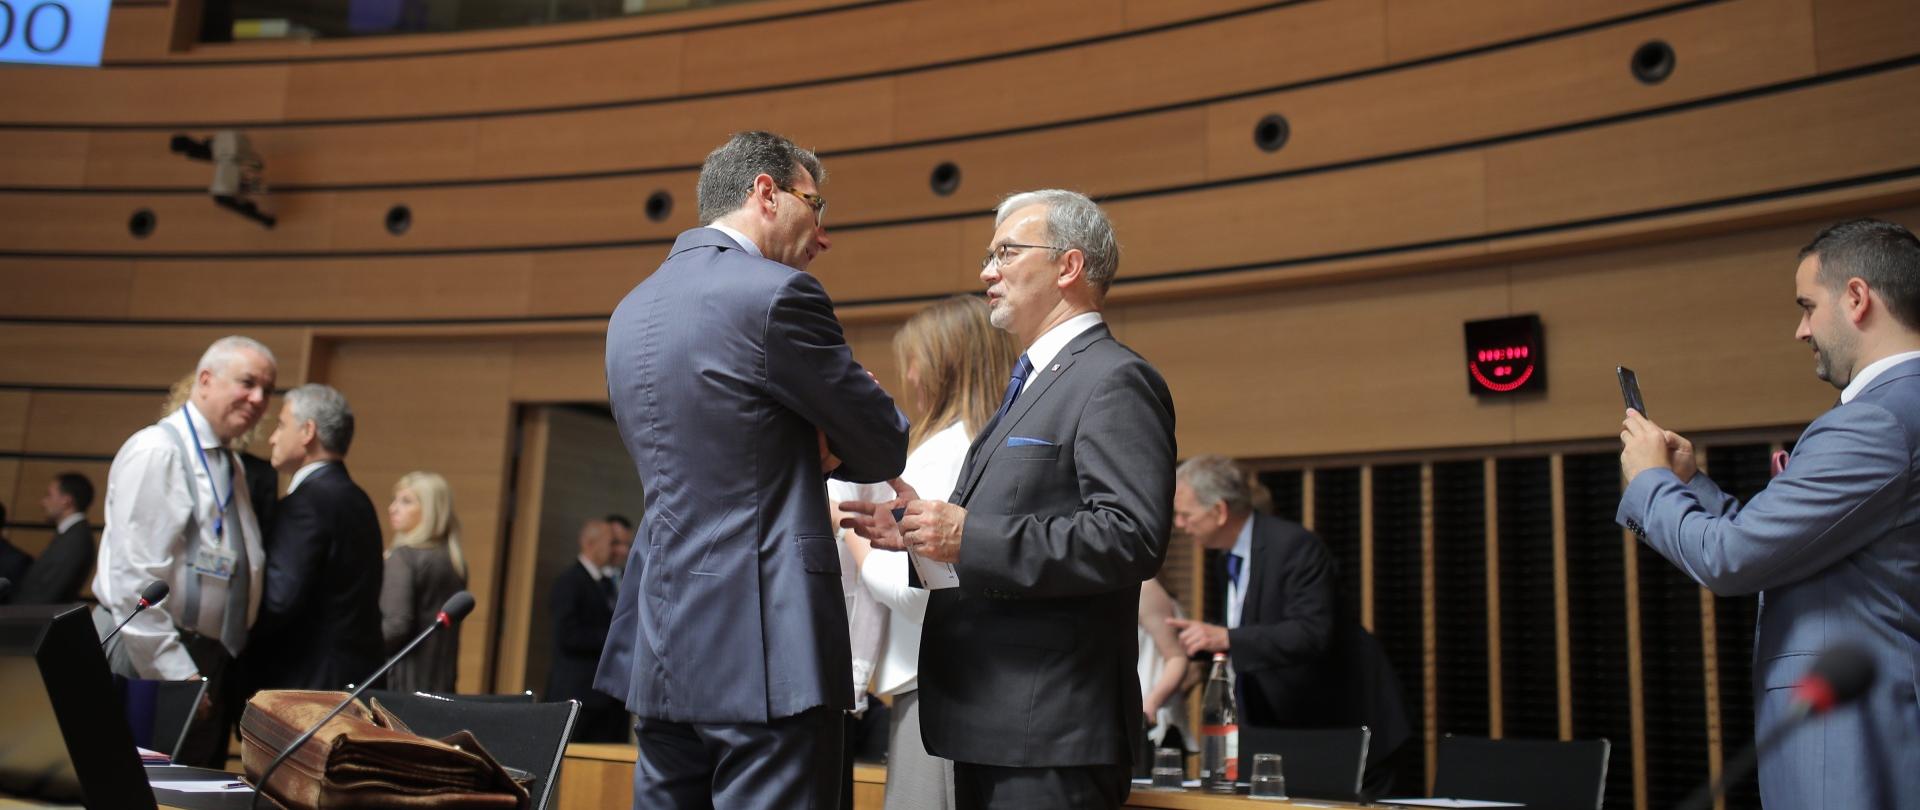 W centralnym punkcie zdjęcie stoją od lewej przedstawiciel Komisji Europejskiej Marc Lemaitre i minister Kwieciński. Rozmawiają ze sobą. Zdjęcie zrobione w sali posiedzeń Rady UE. Na sali obecni tez inni ludzie